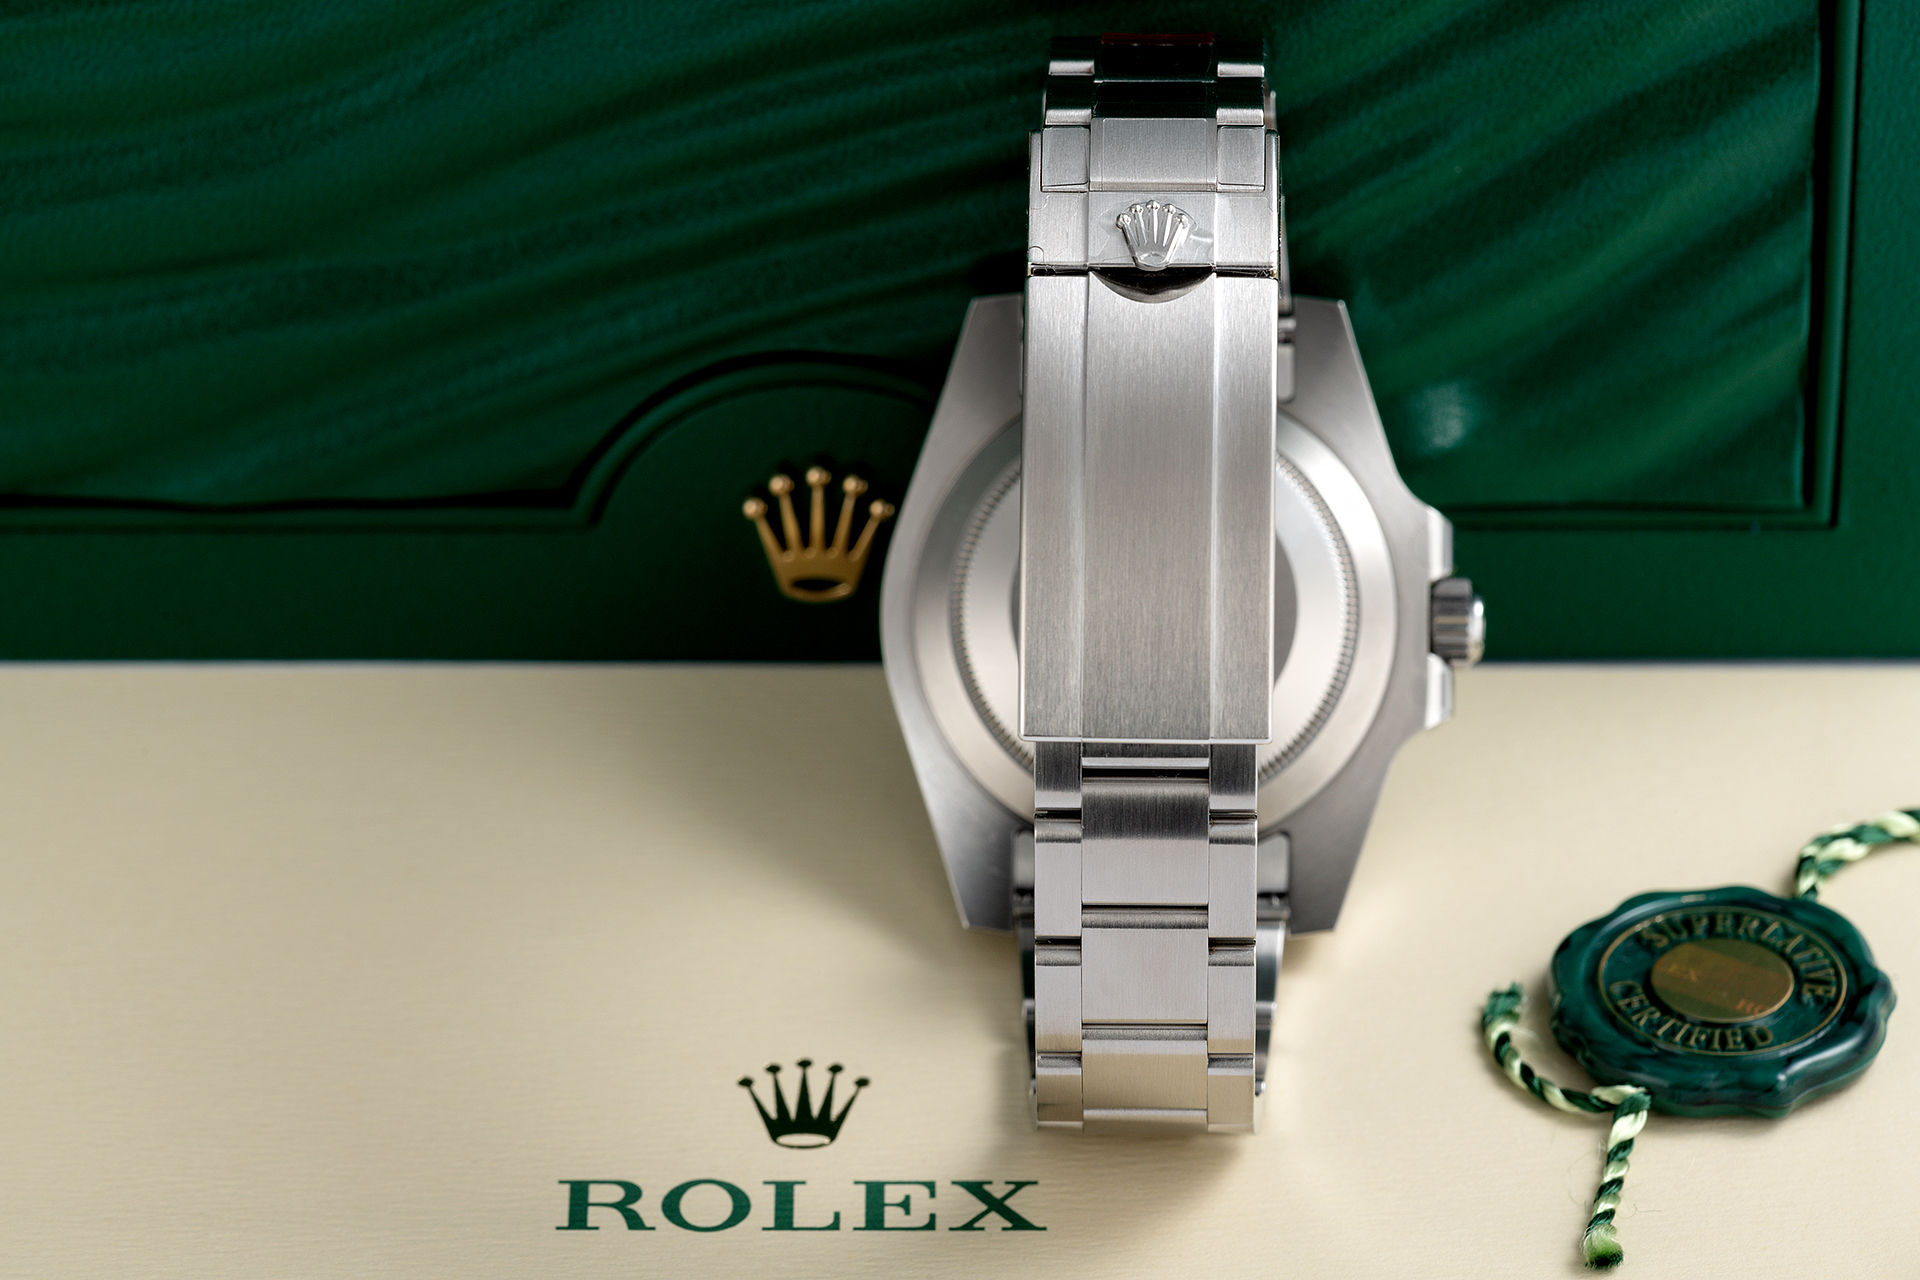 ref 116610LN | '5 Year Rolex Warranty' | Rolex Submariner Date